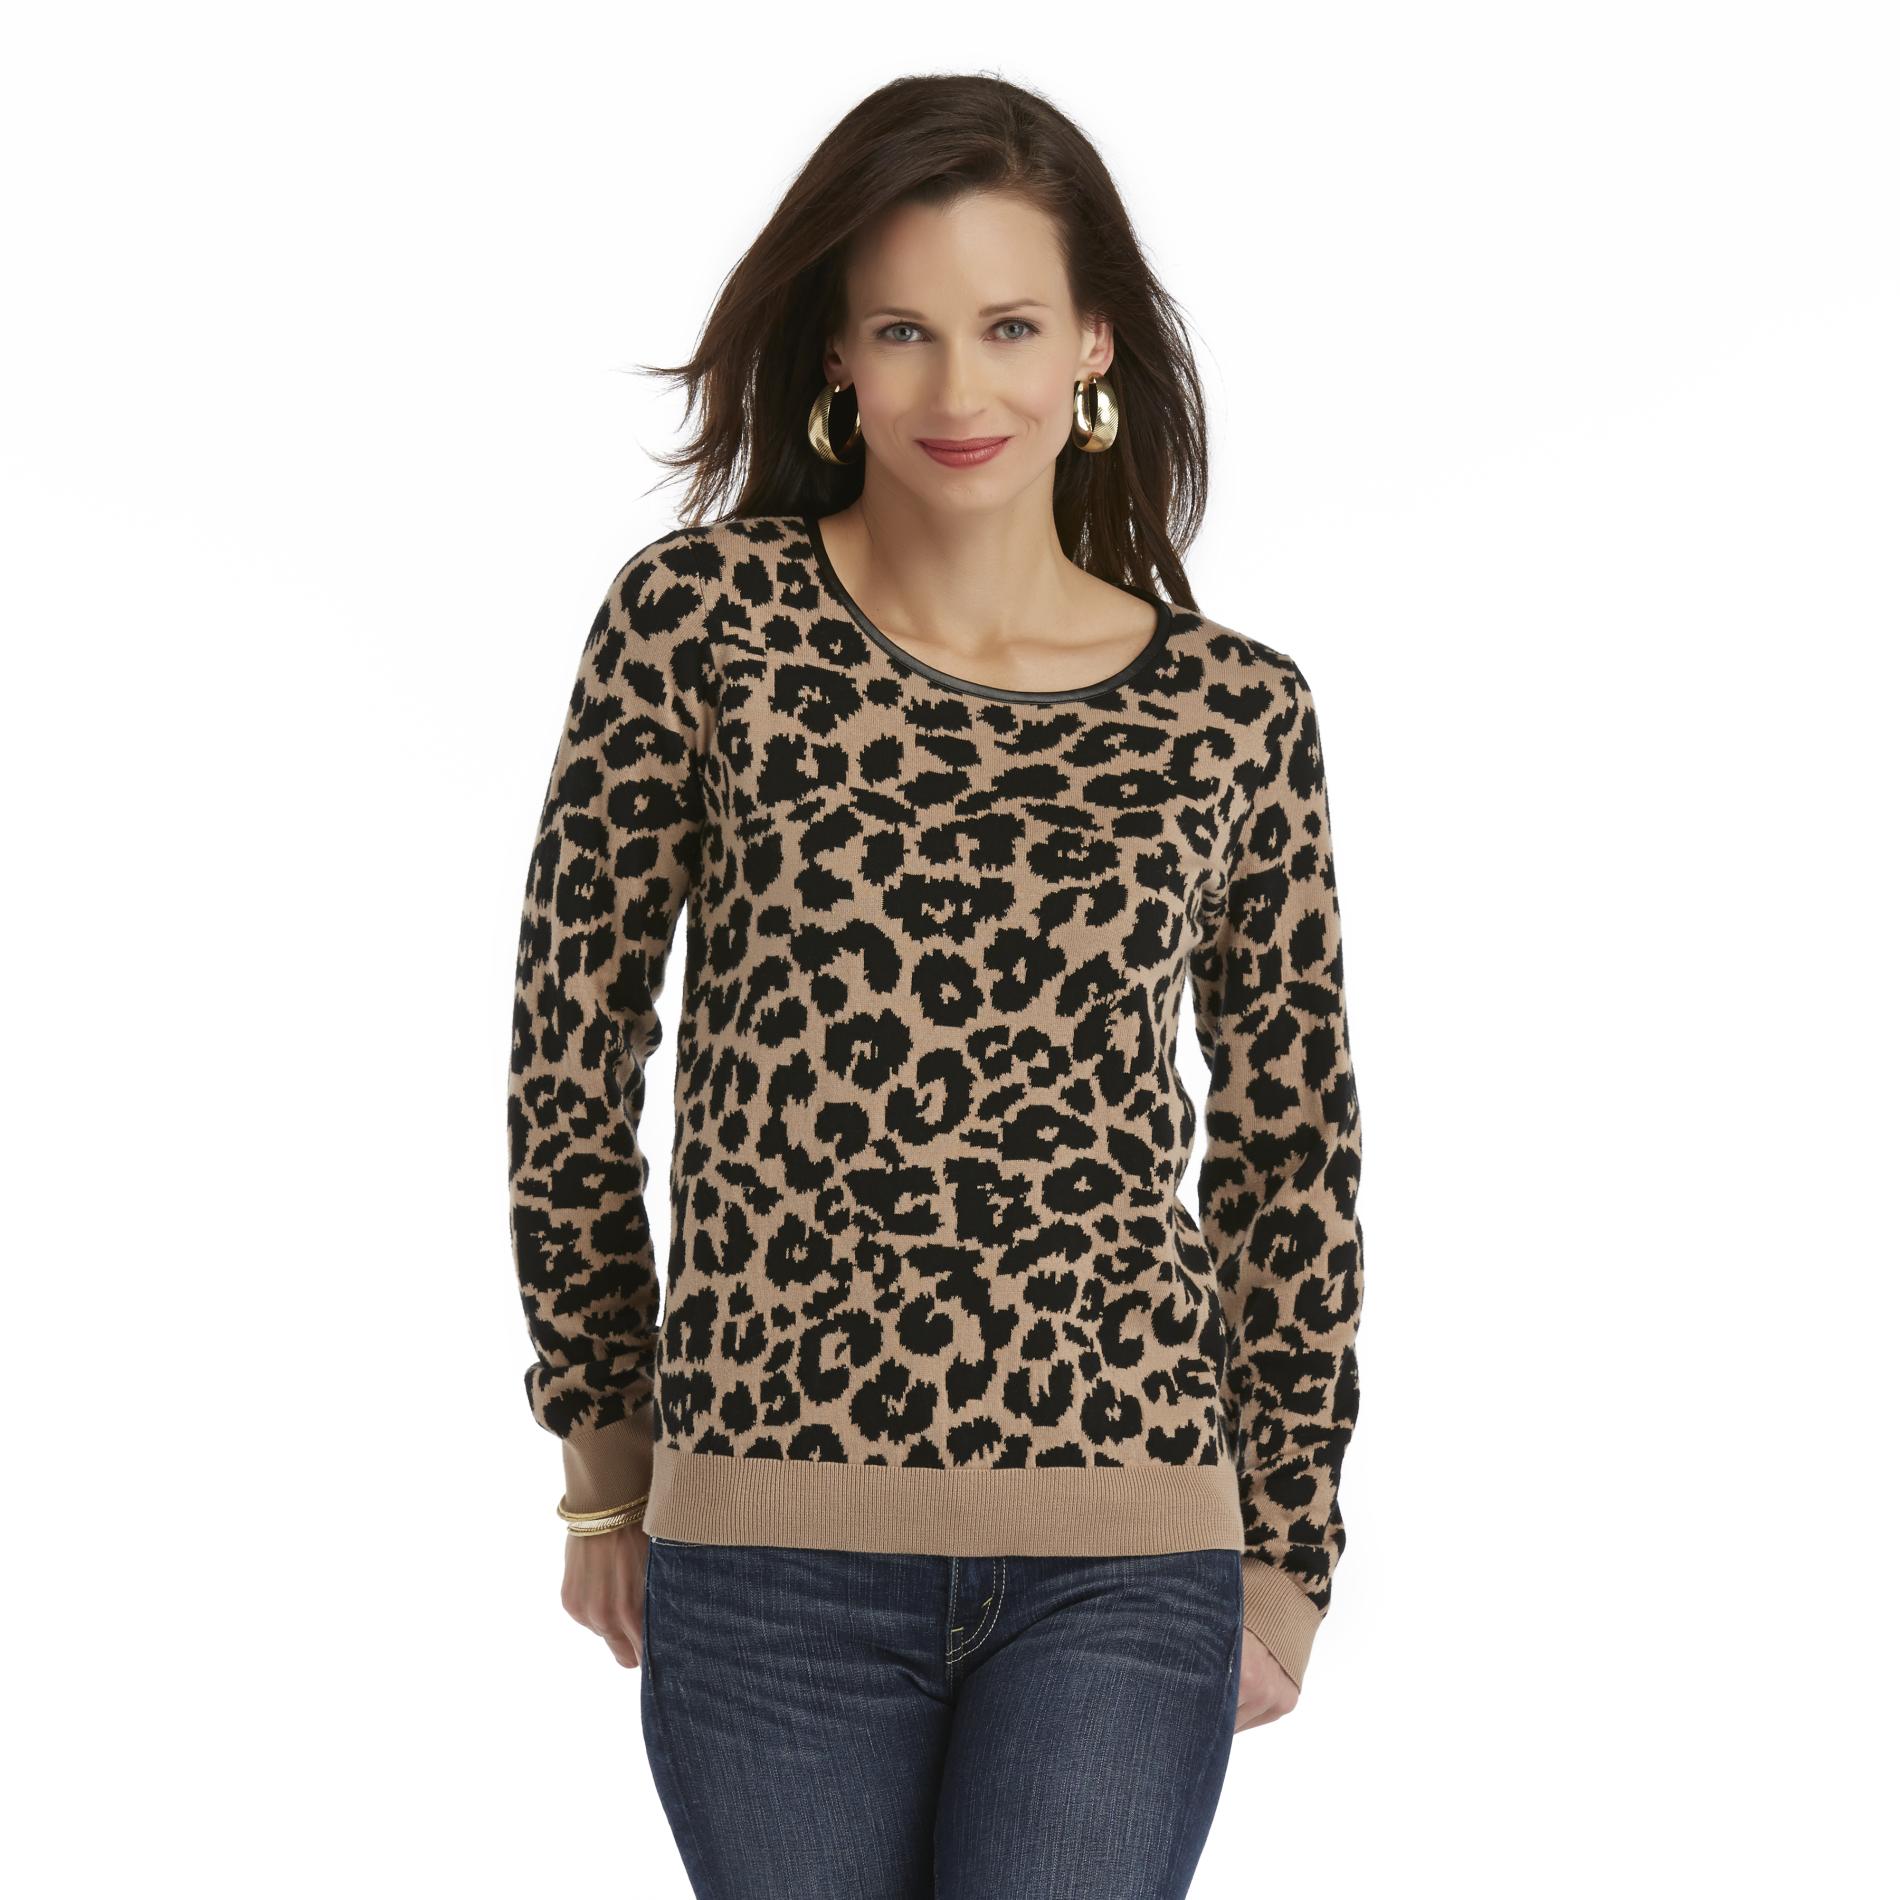 Jaclyn Smith Women's Jacquard Knit Sweater - Leopard Print